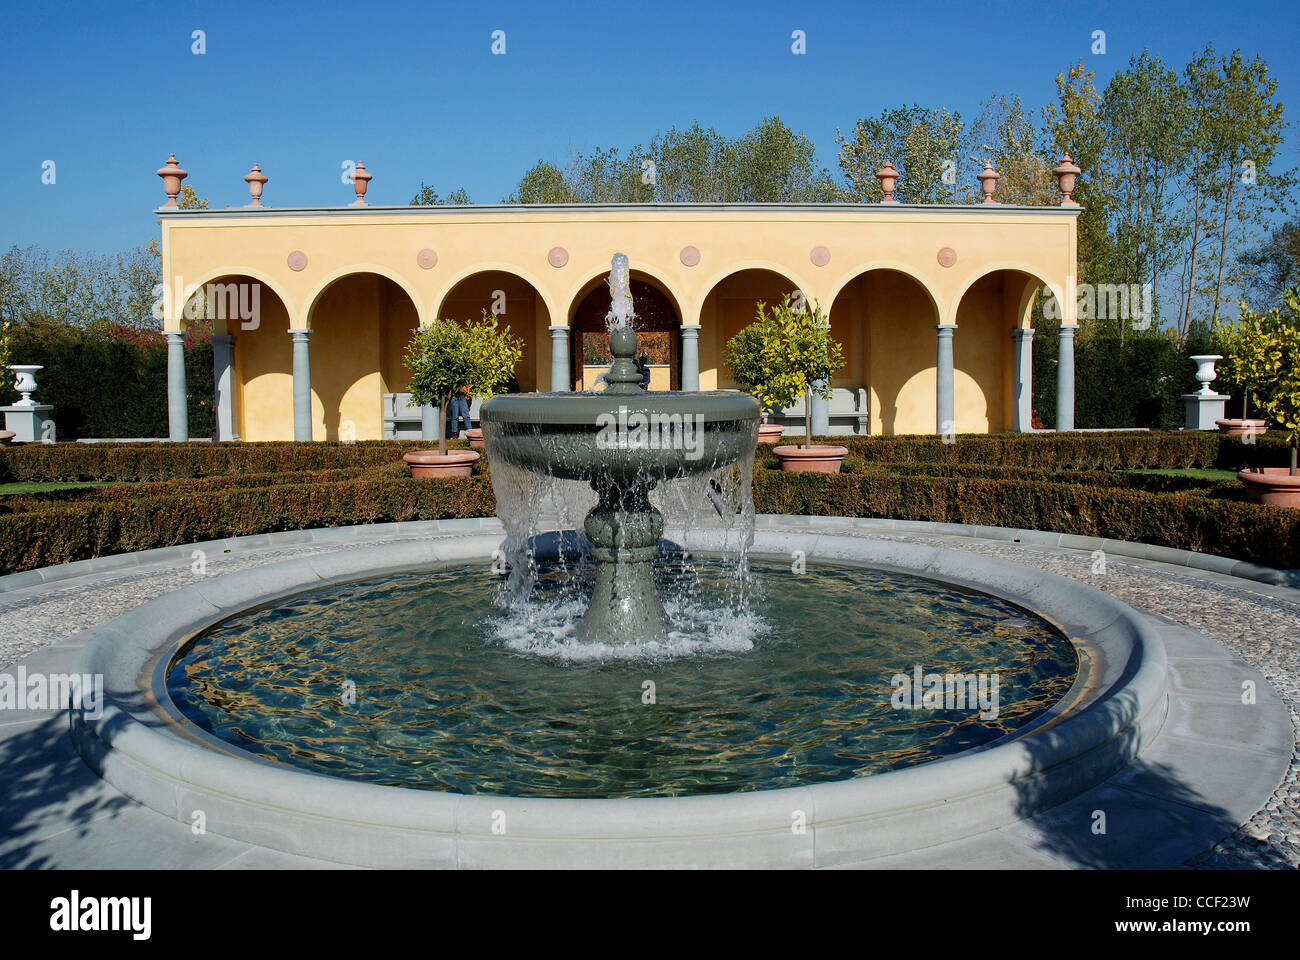 La renaissance italienne jardin Giardino Della Bobolina dans les jardins du monde à Berlin. Banque D'Images